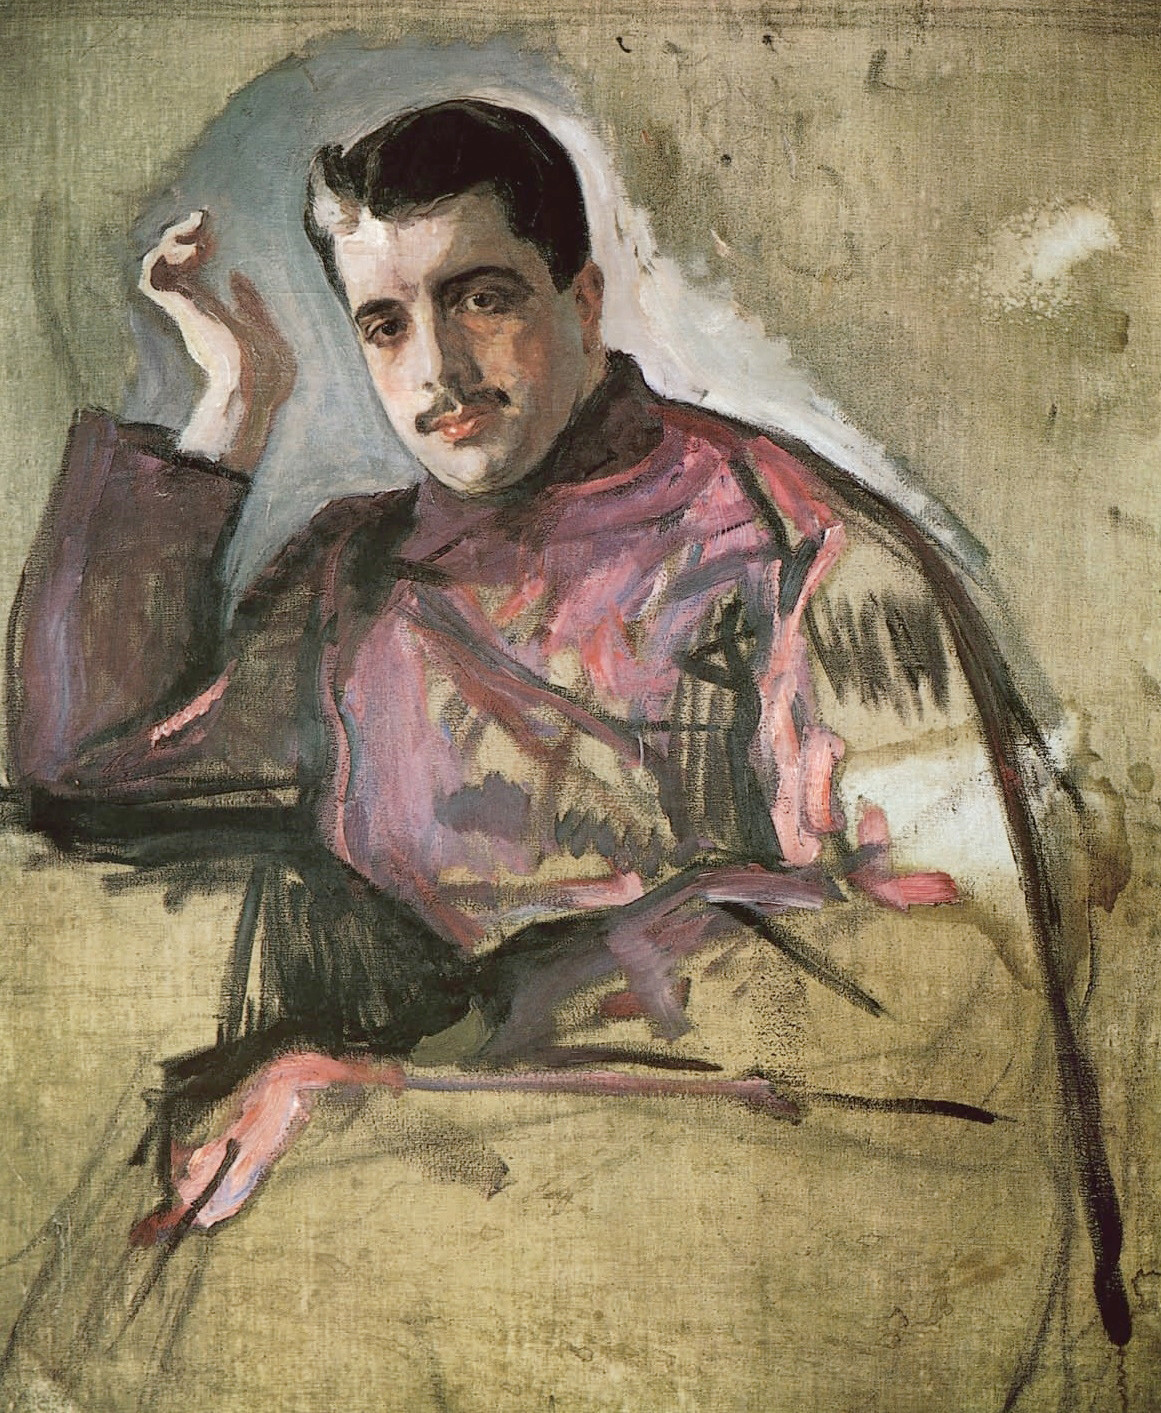 セルゲイ・ディアギレフの肖像、ワレンチン・セローフ画